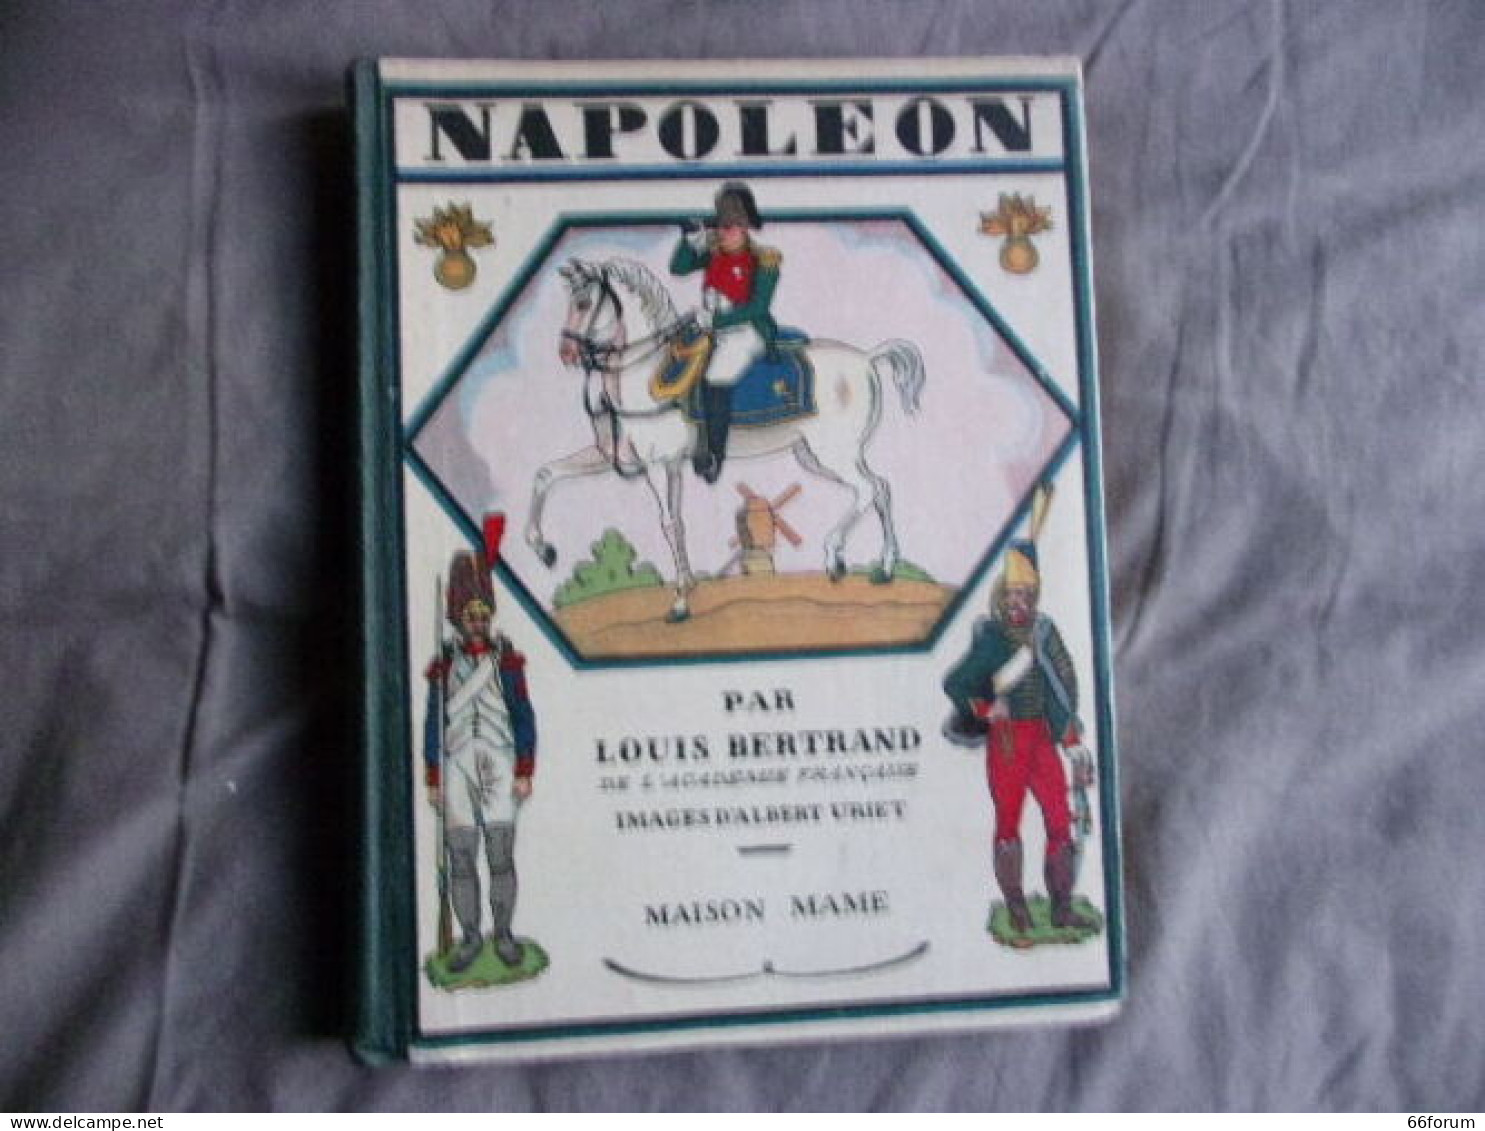 Napoléon - History